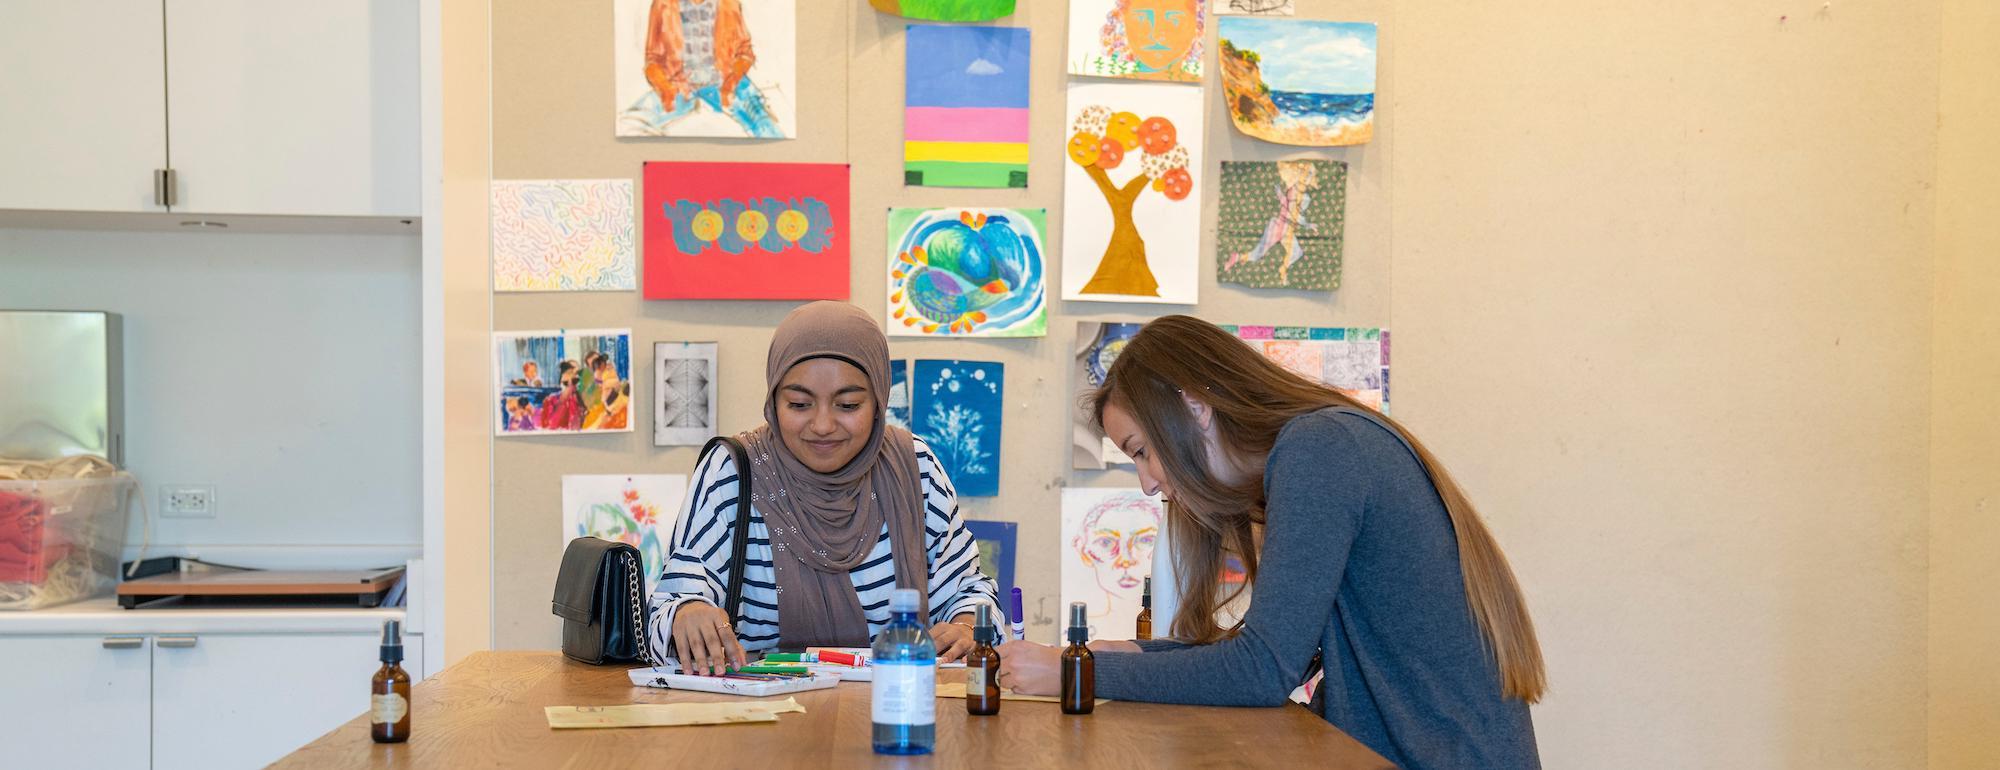 在amjs澳金沙门，两名学生在一张被艺术品包围的桌子旁工作. 